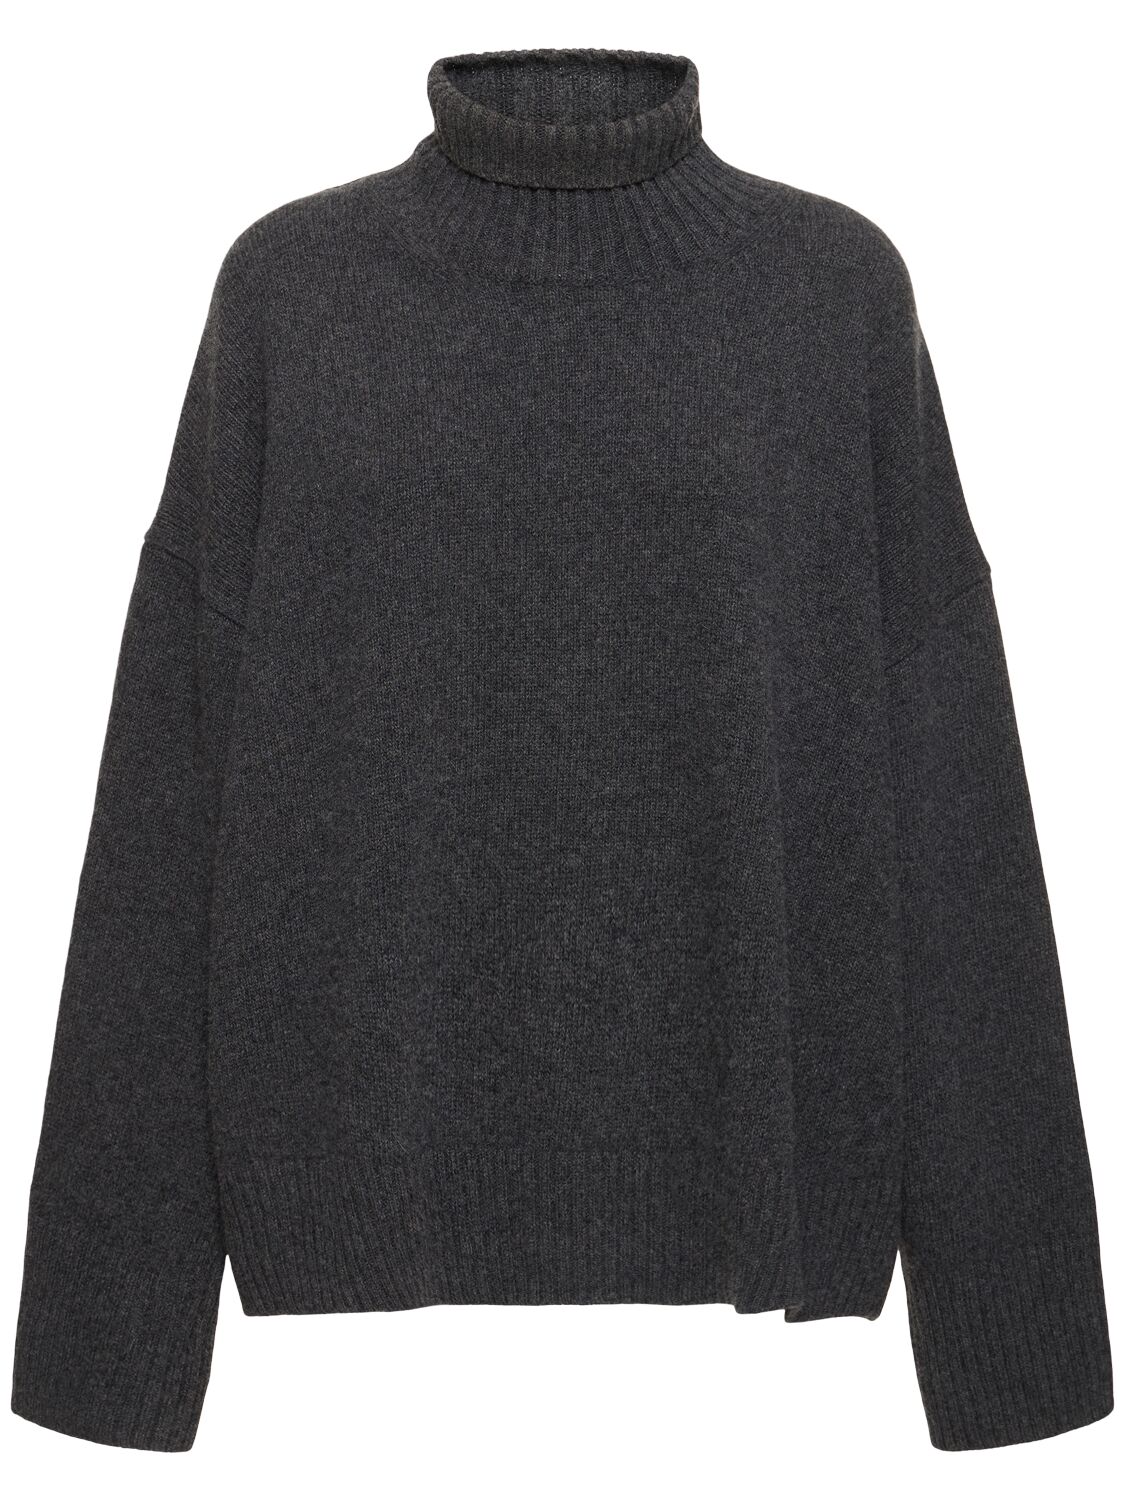 Soeur William Wool Knit Turtleneck Sweater In Gray